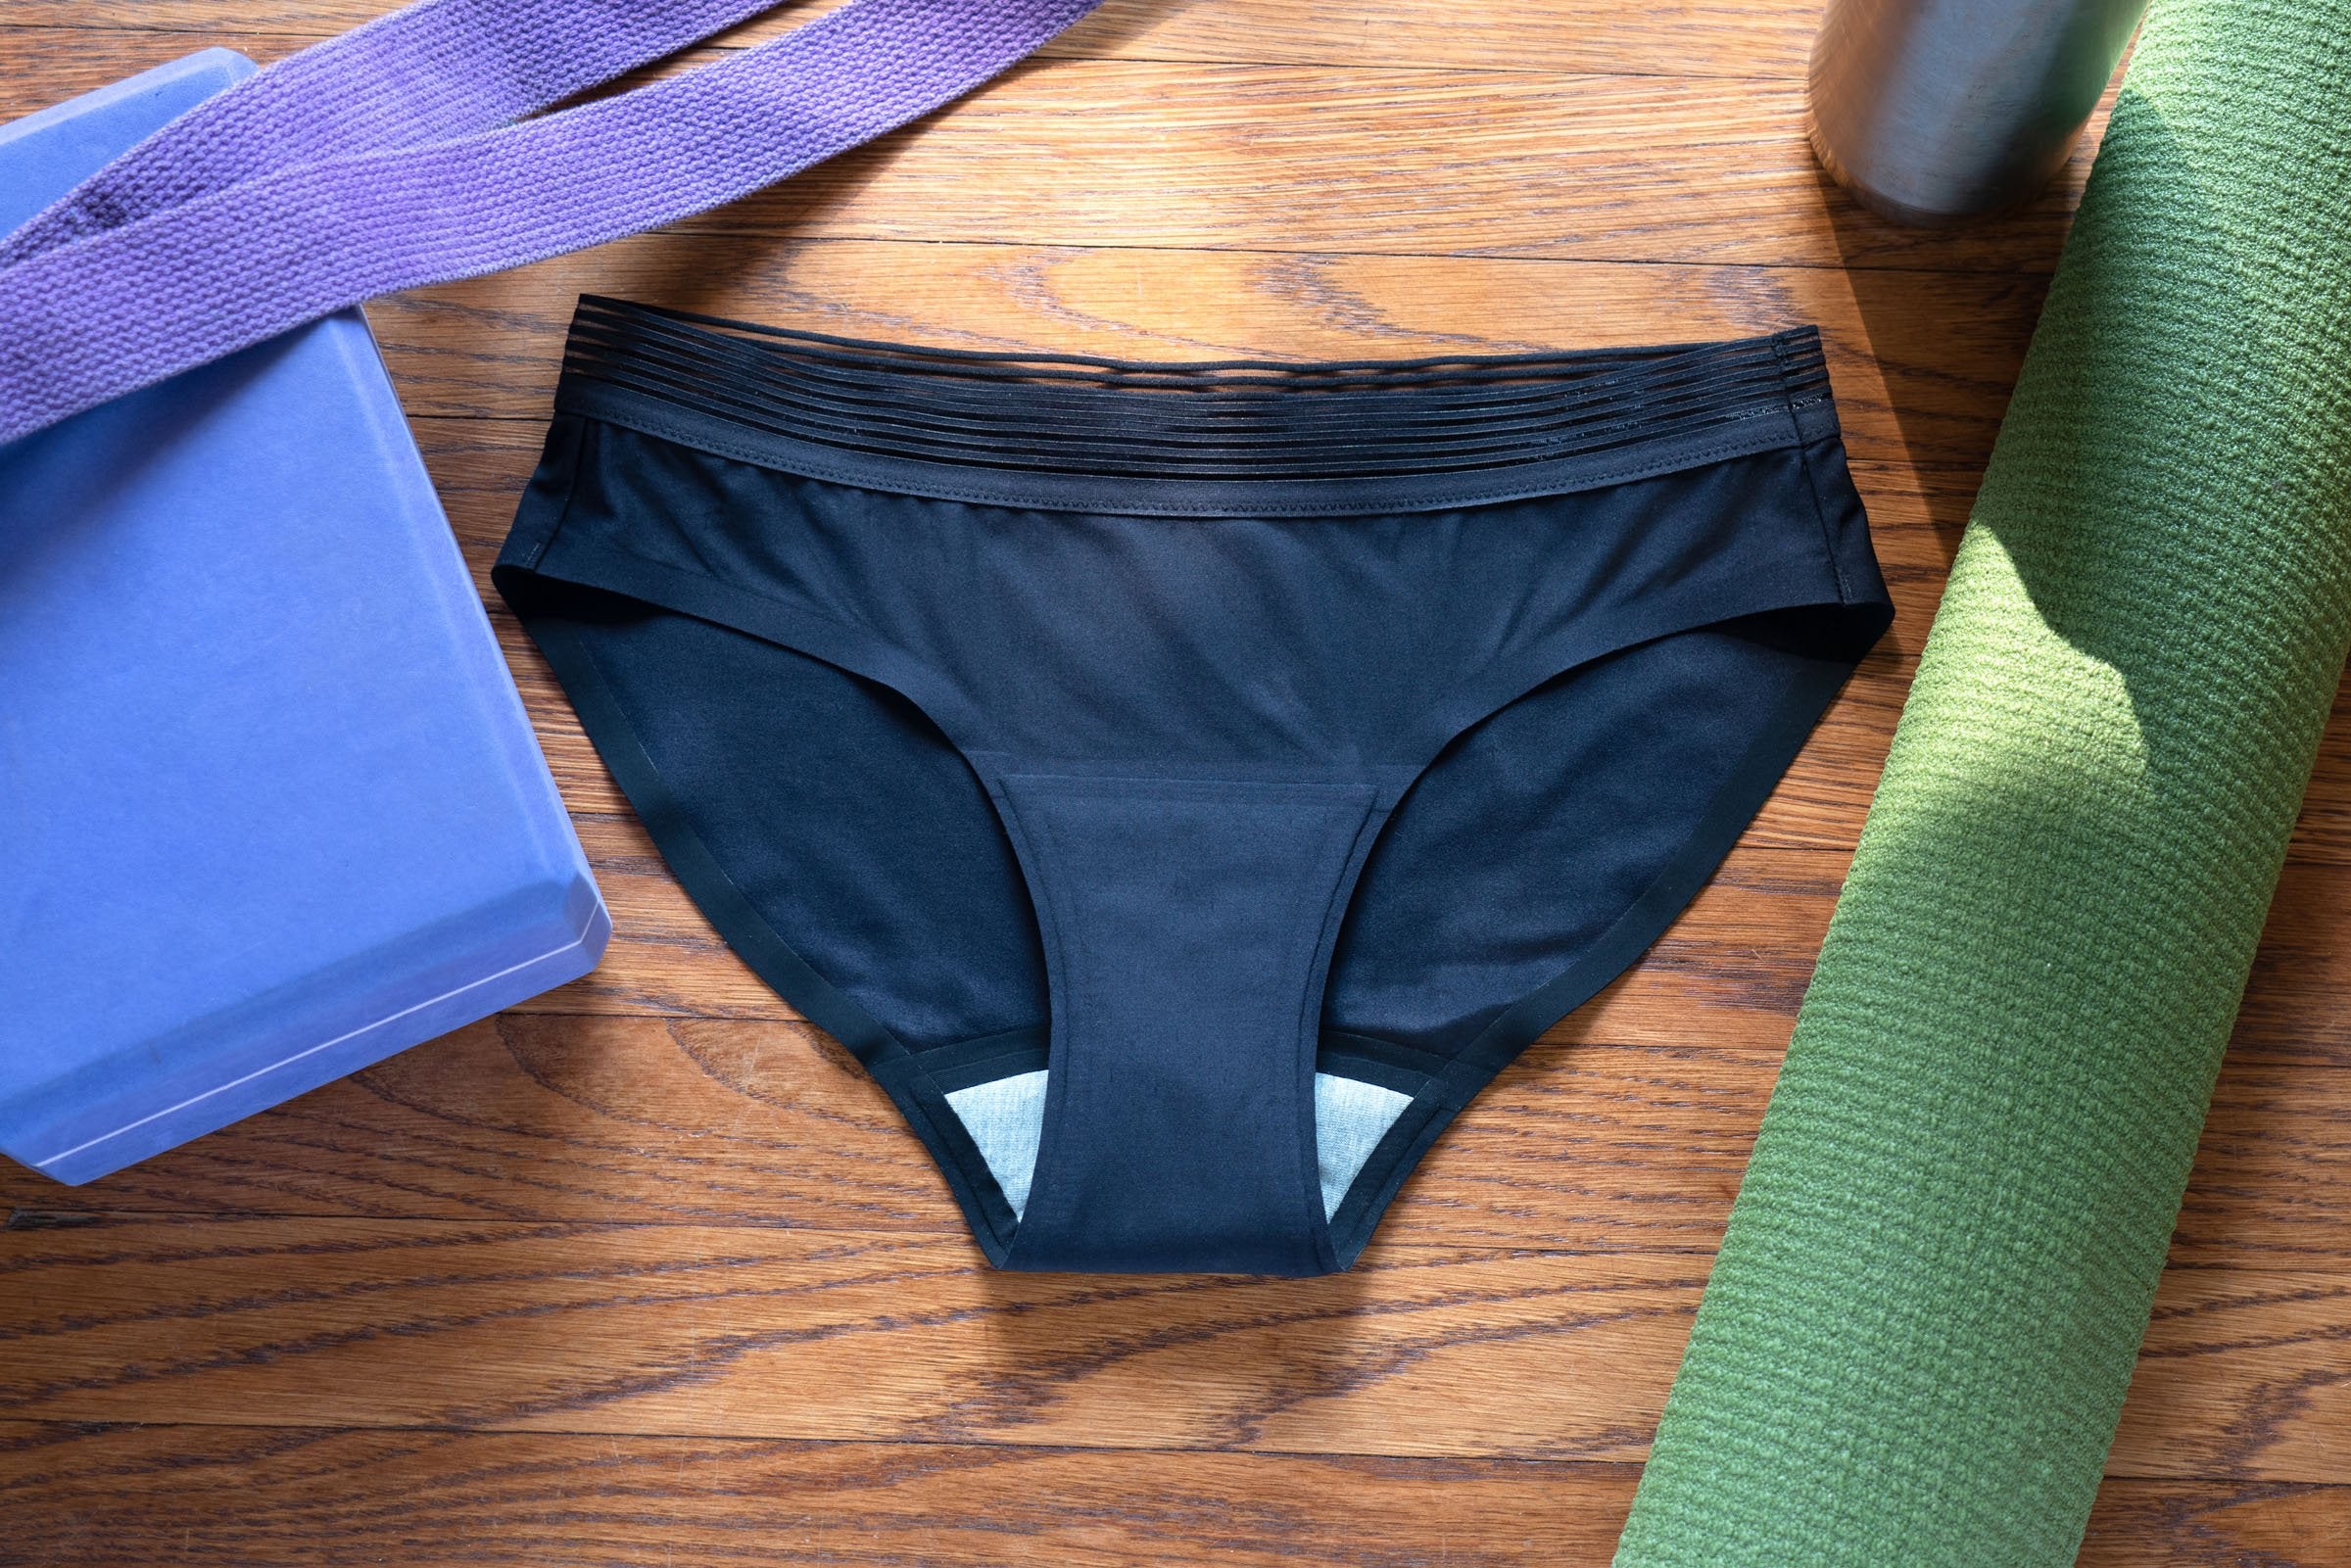  Leakproof Underwear for Women Incontinence, Leak Proof